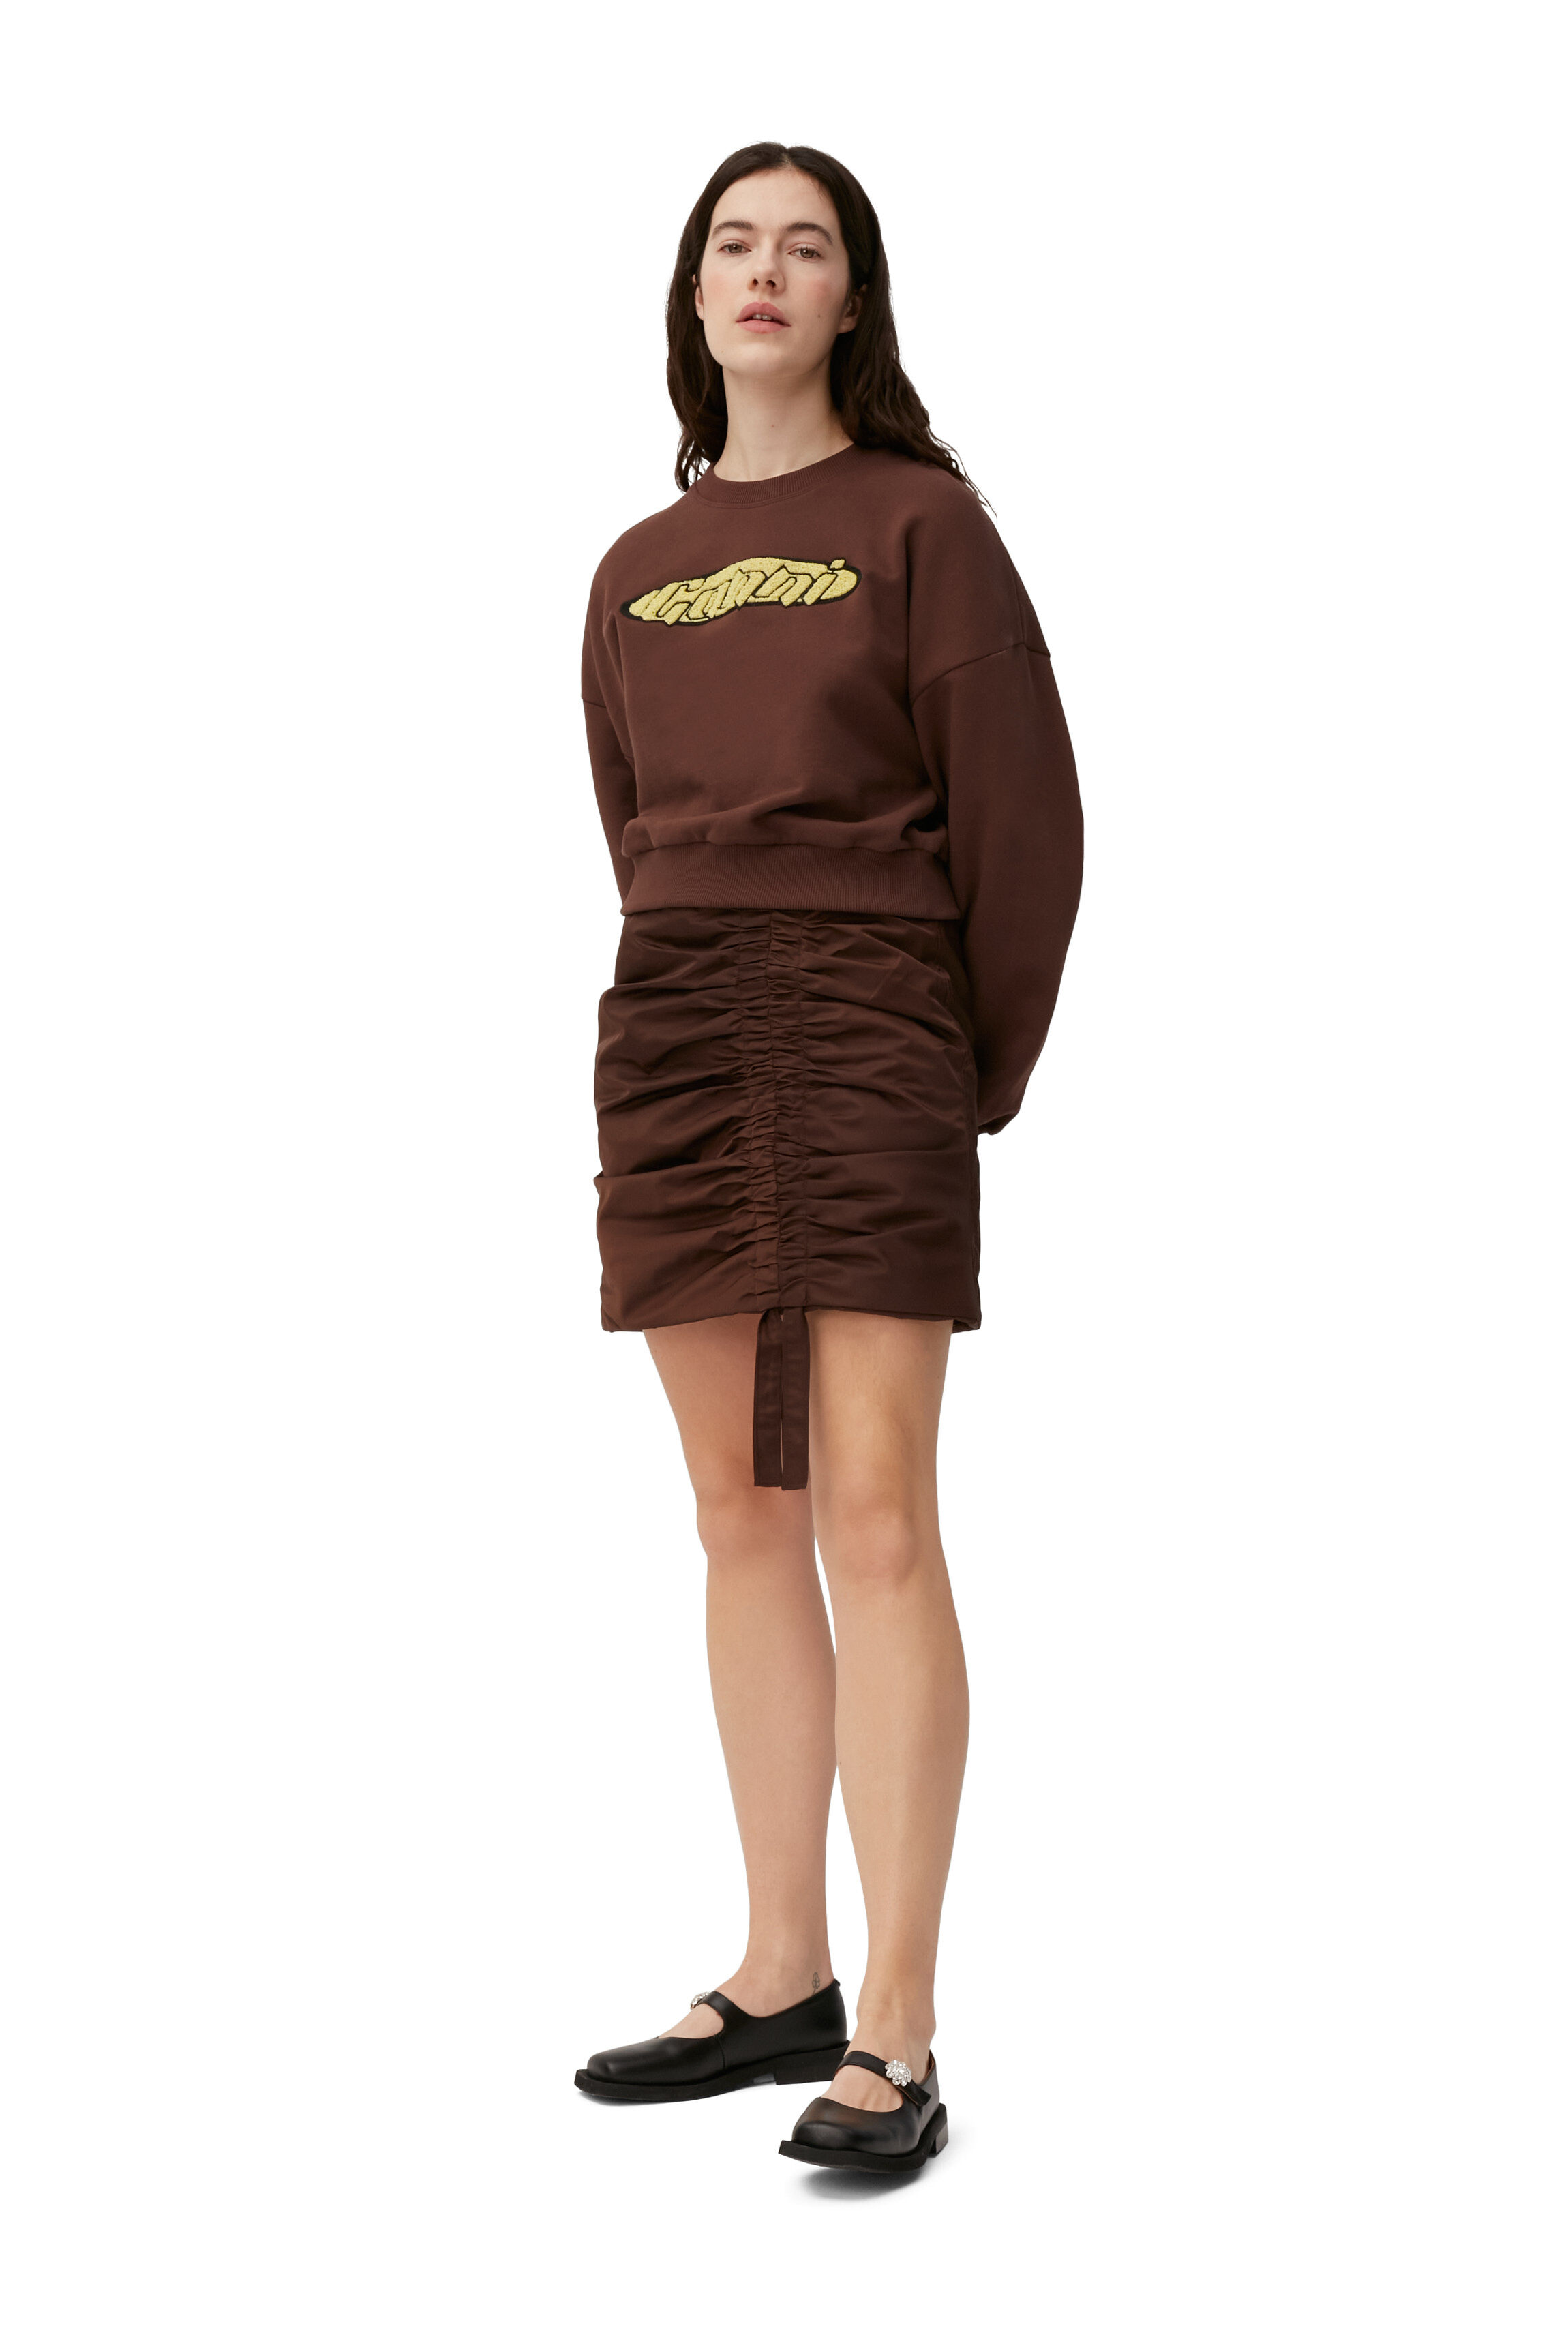 Ganni Baumwolle Software Hoodie Isoli aus Baumwolle in Braun und Fitnesskleidung Hoodies Training Damen Bekleidung Sport- 